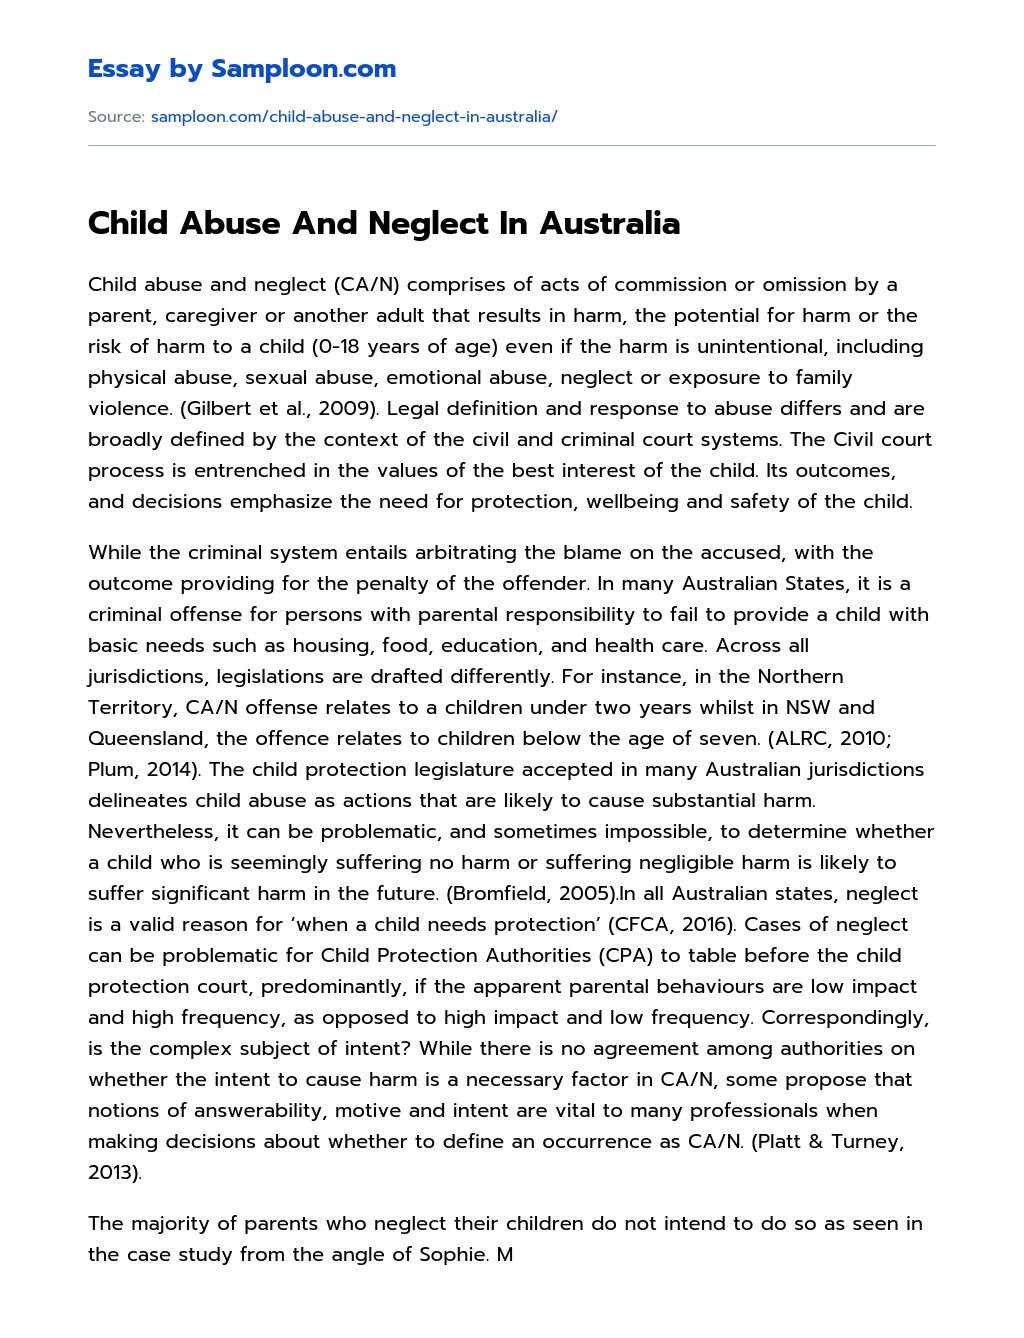 Child Abuse And Neglect In Australia essay